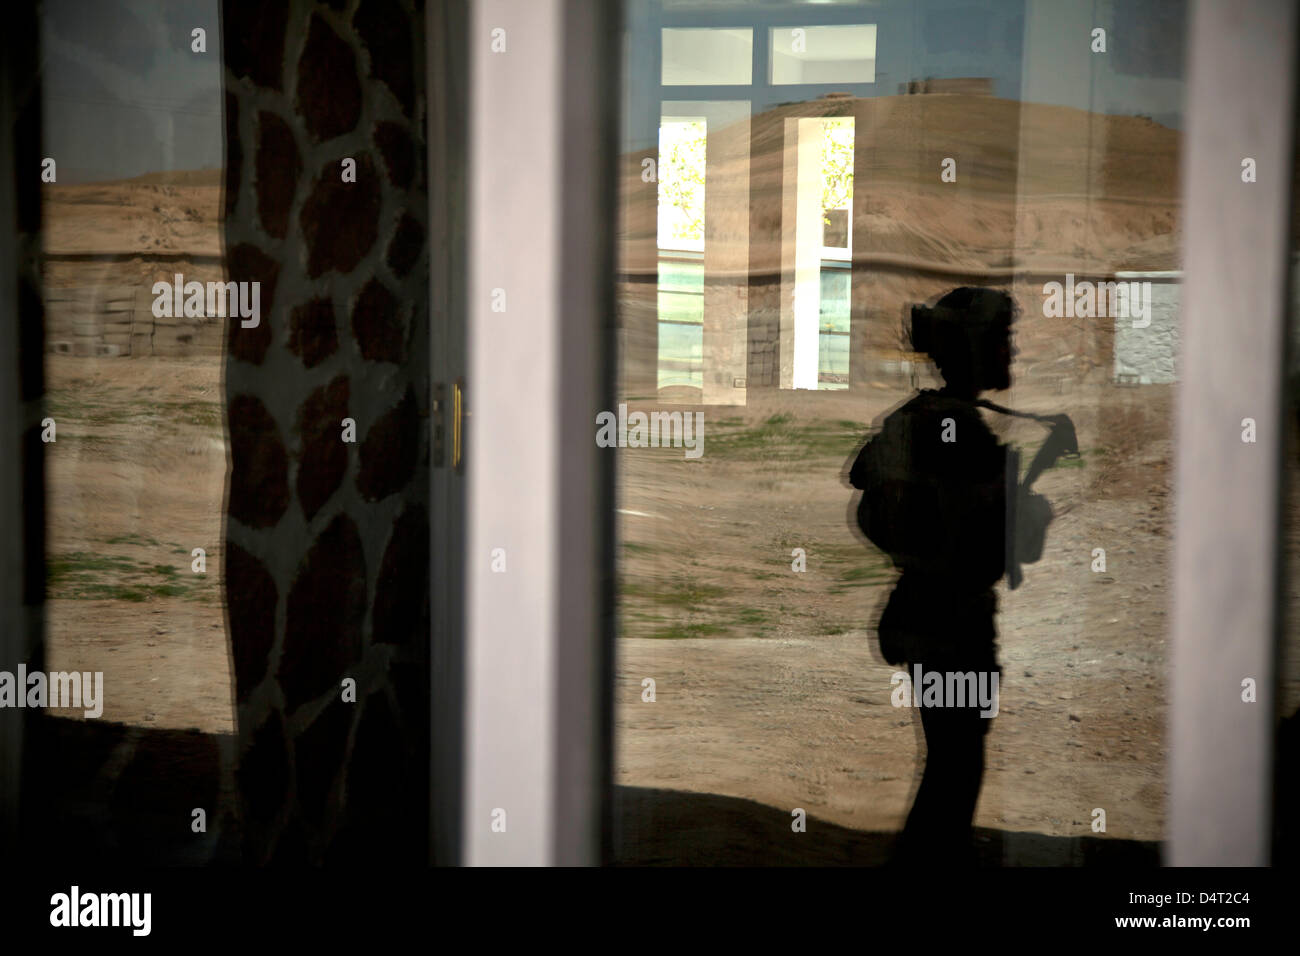 La riflessione in una vetrina dell'esercito nazionale afghano delle forze speciali per fornire sicurezza per un governatore distrettuale Marzo 17, 2013 nella provincia di Helmand, Afghanistan. Foto Stock